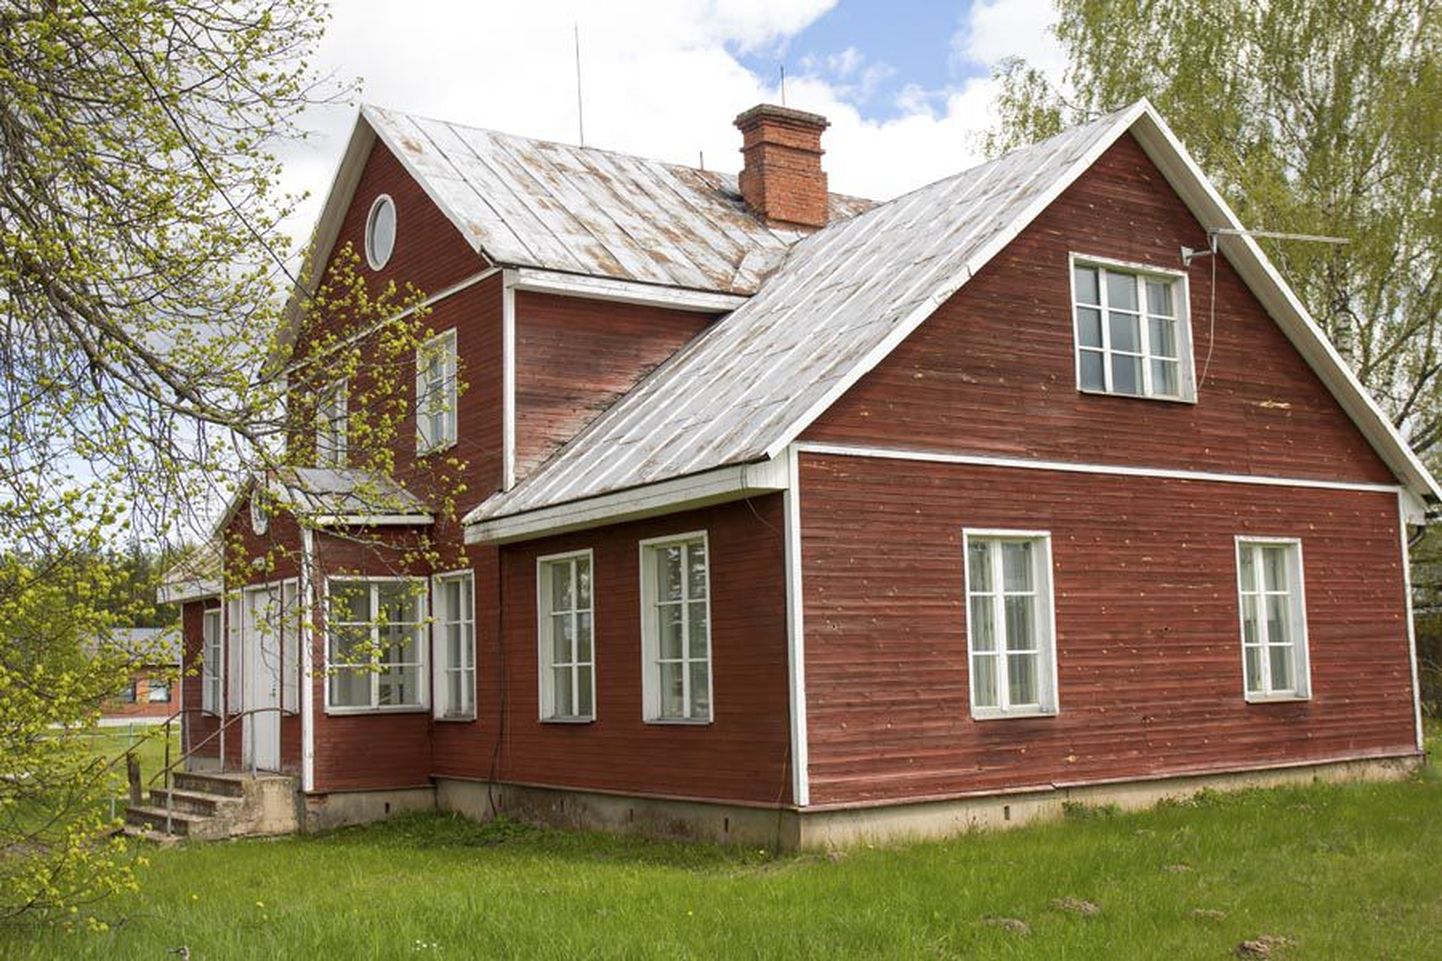 Keset Saarepeedit seisev Rootsi punaseks võõbatud hoone ehitati Teisele maailmasõjale eelnenud iseseisvusperioodil vallamajaks ja see toimis riigikordade vahetumisest hoolimata haldushoonena 2008. aastani. Nüüd on hoone uue peremehe ootel.